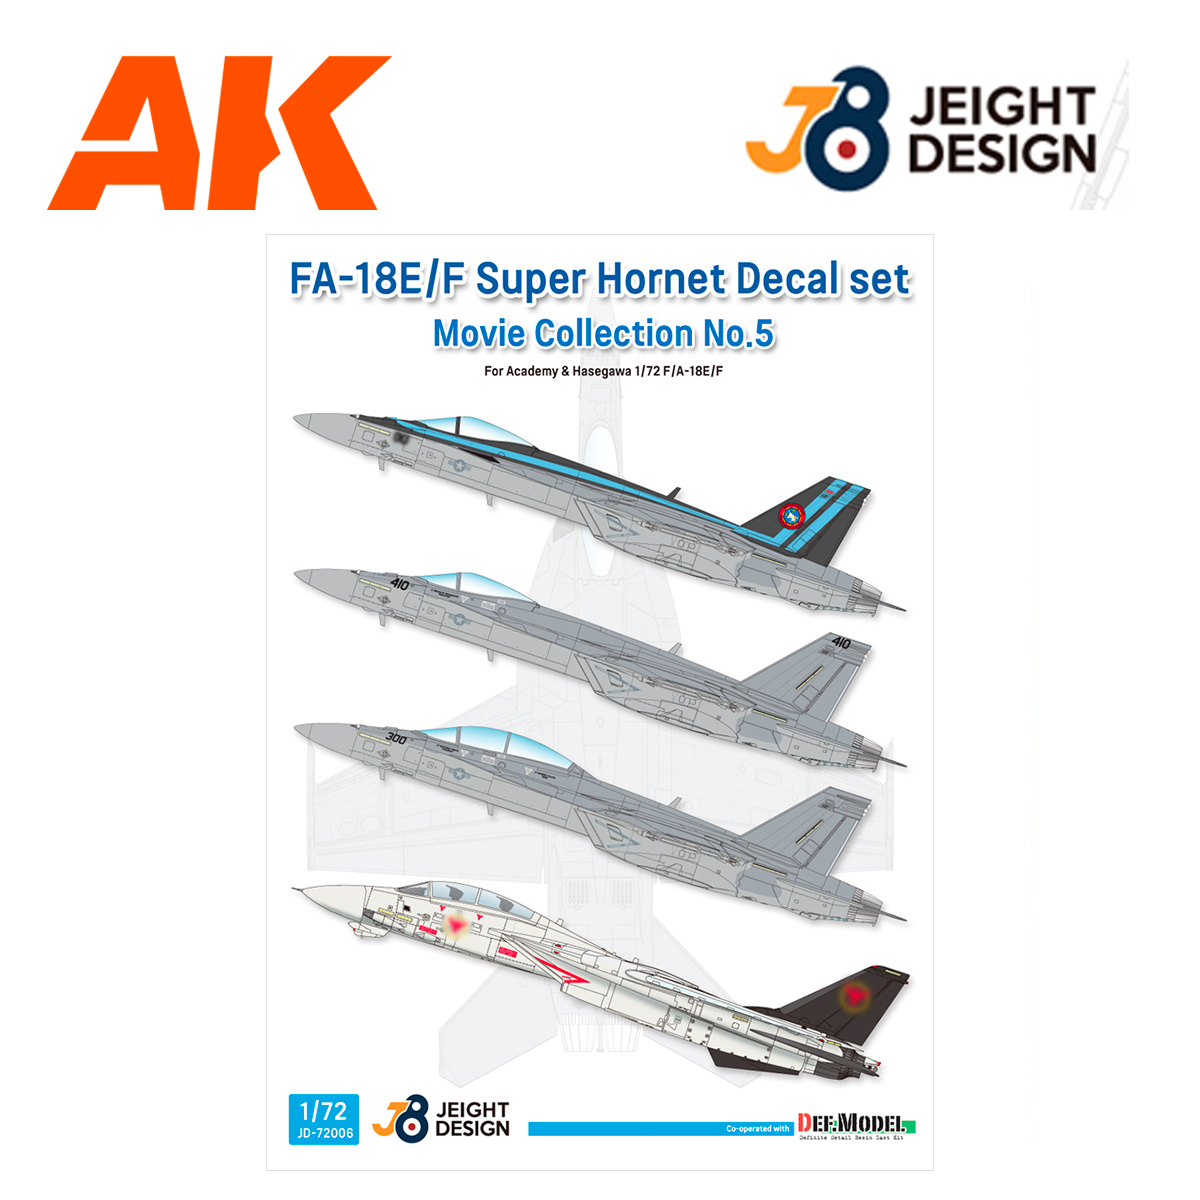 F/A-18E/F Super Hornet Decal set – Movie Collection No.5